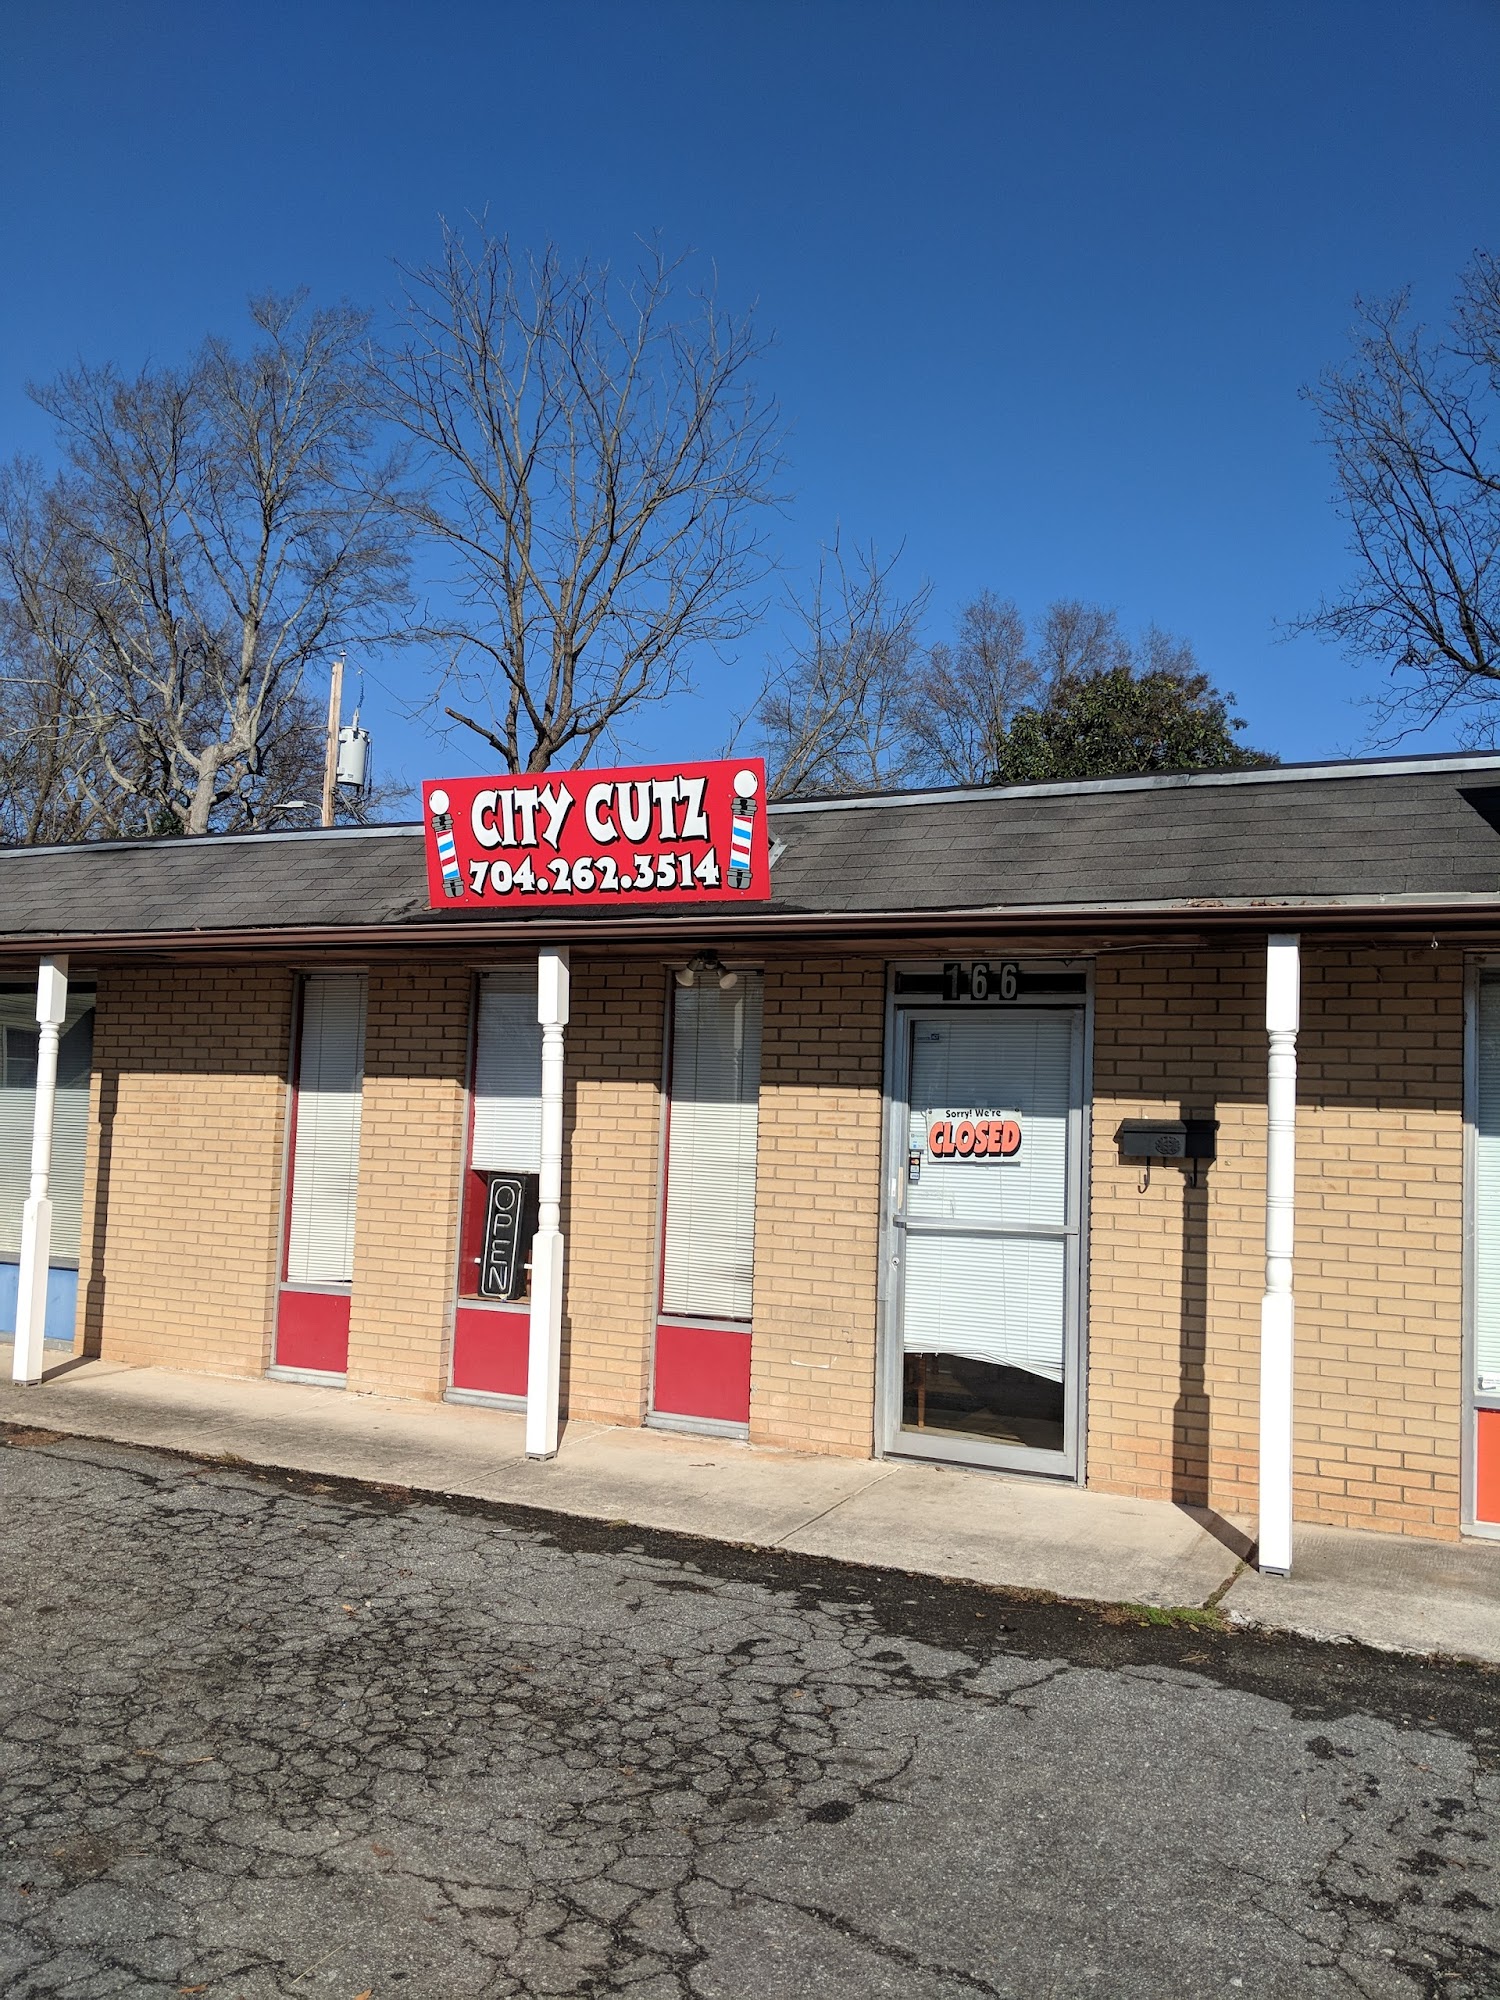 City Cutz Barber Shop